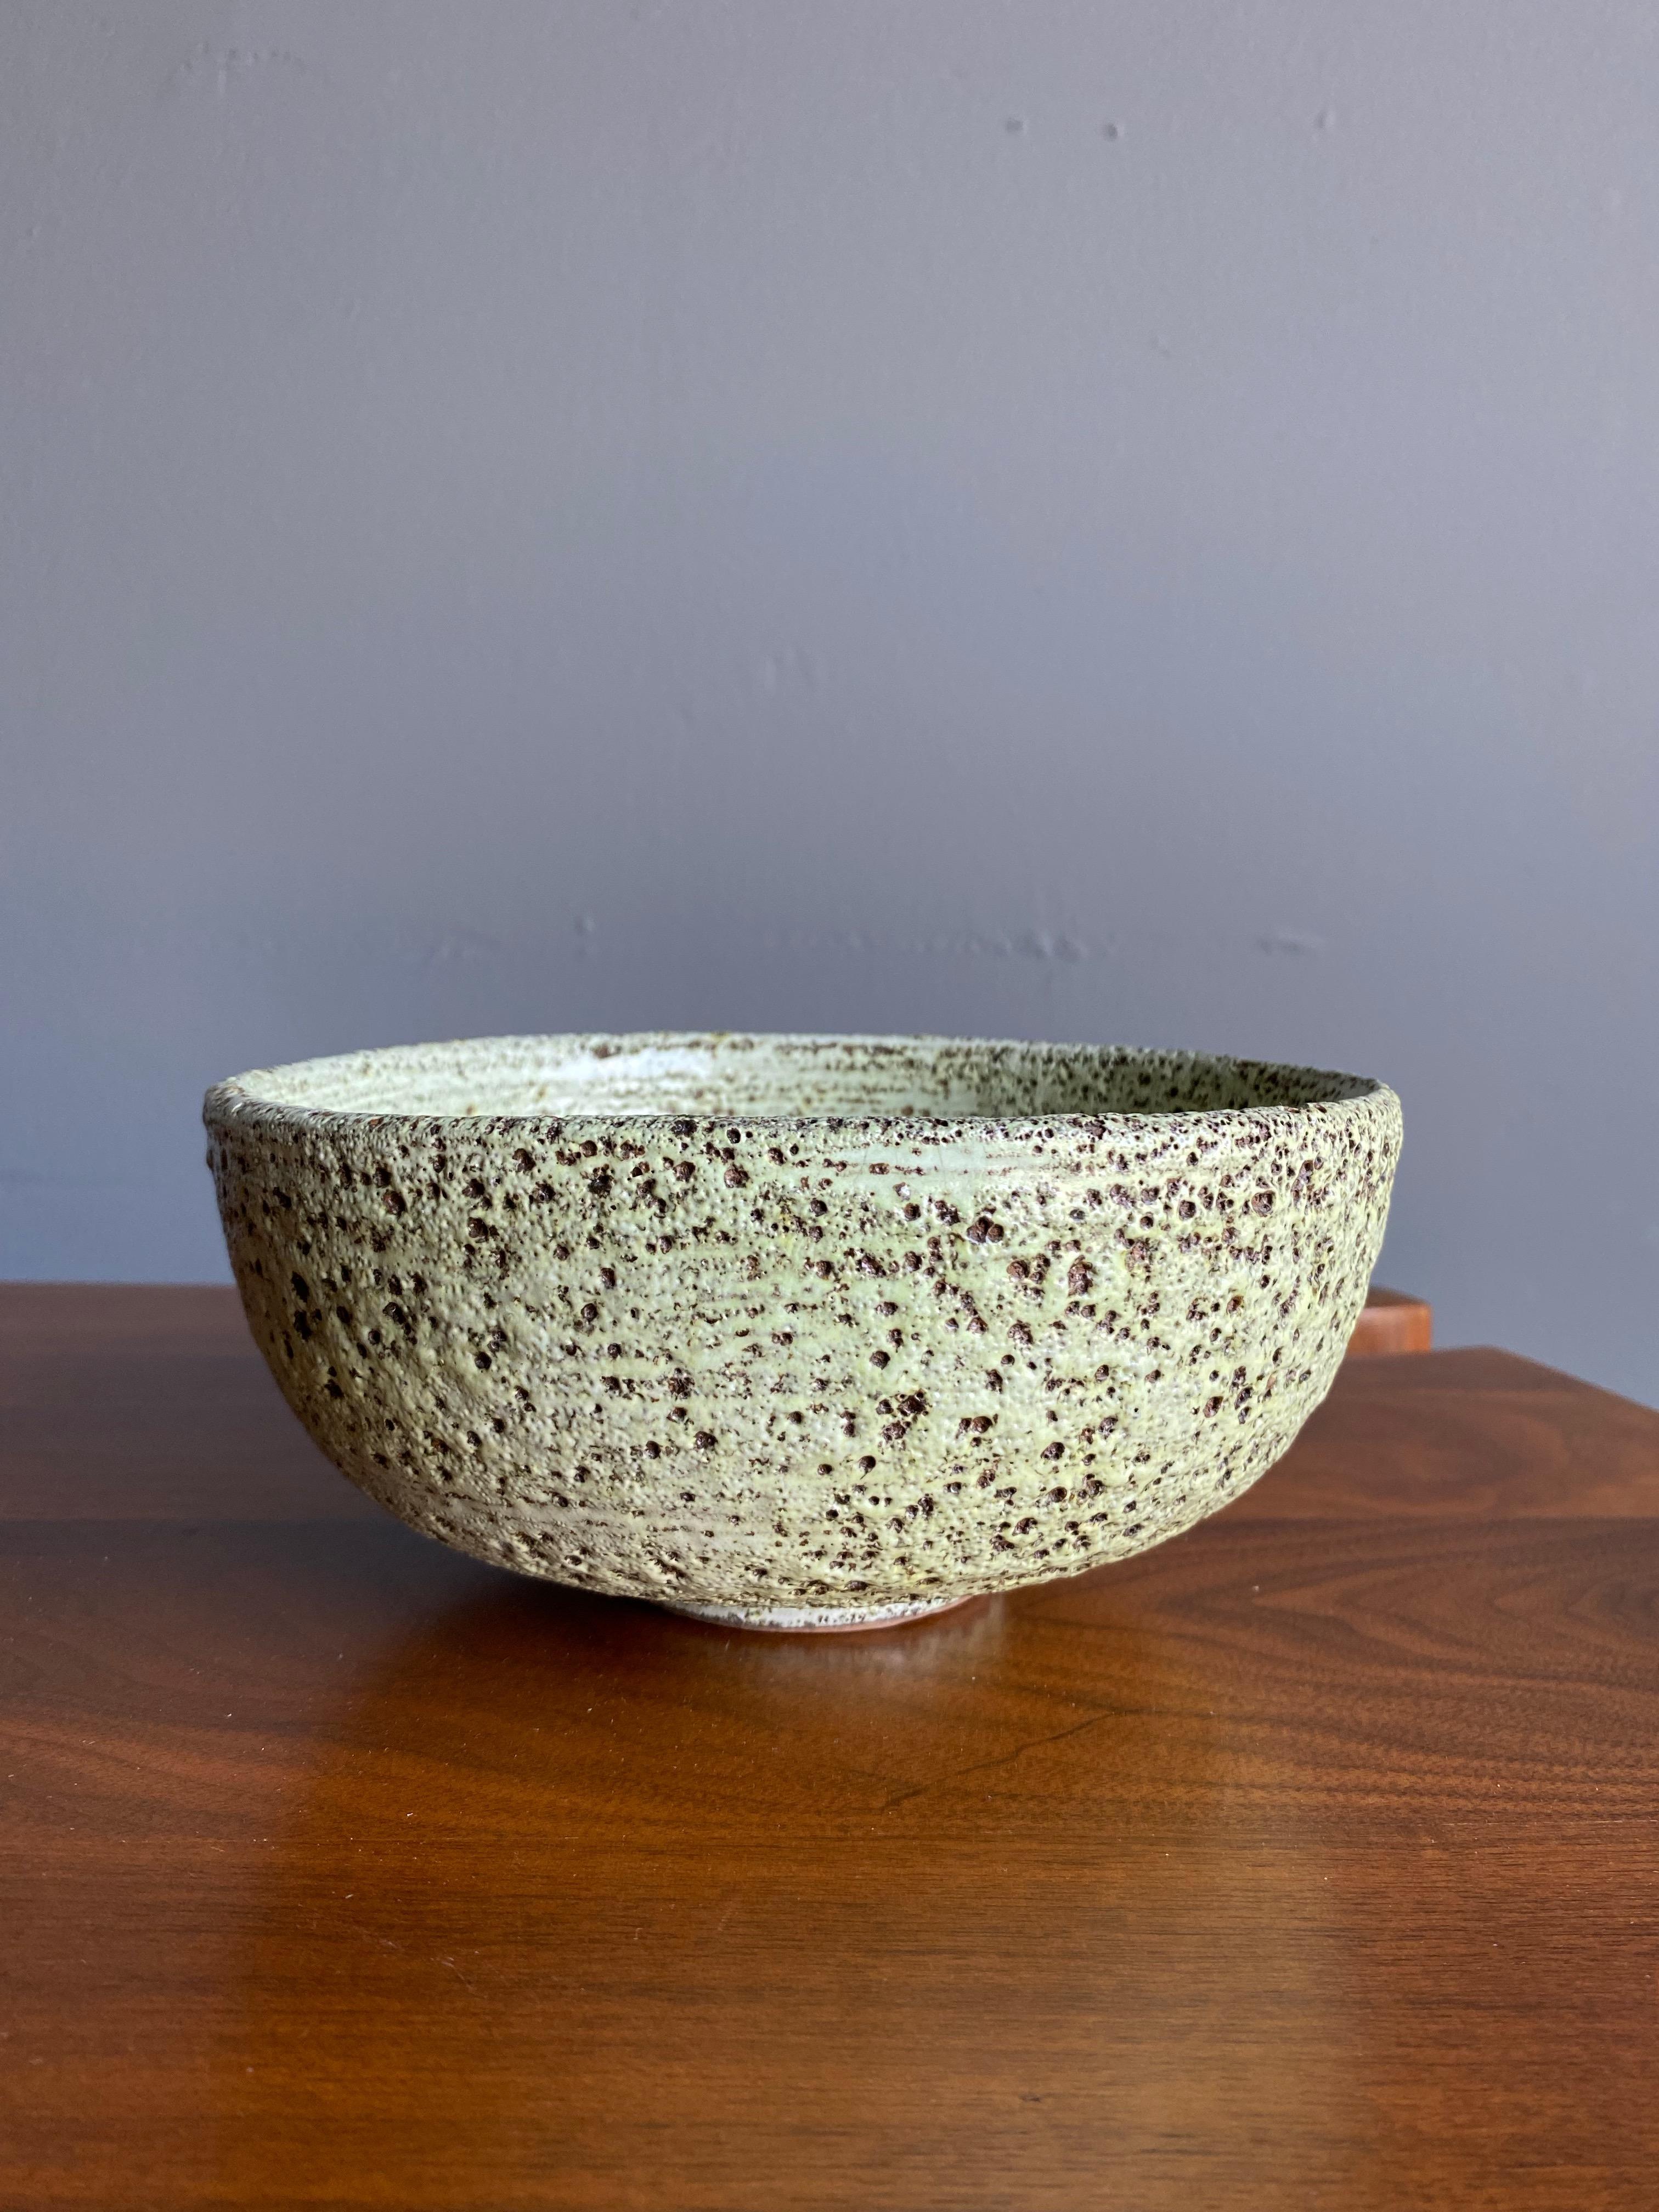 Lava glaze ceramic bowl, circa 1965.